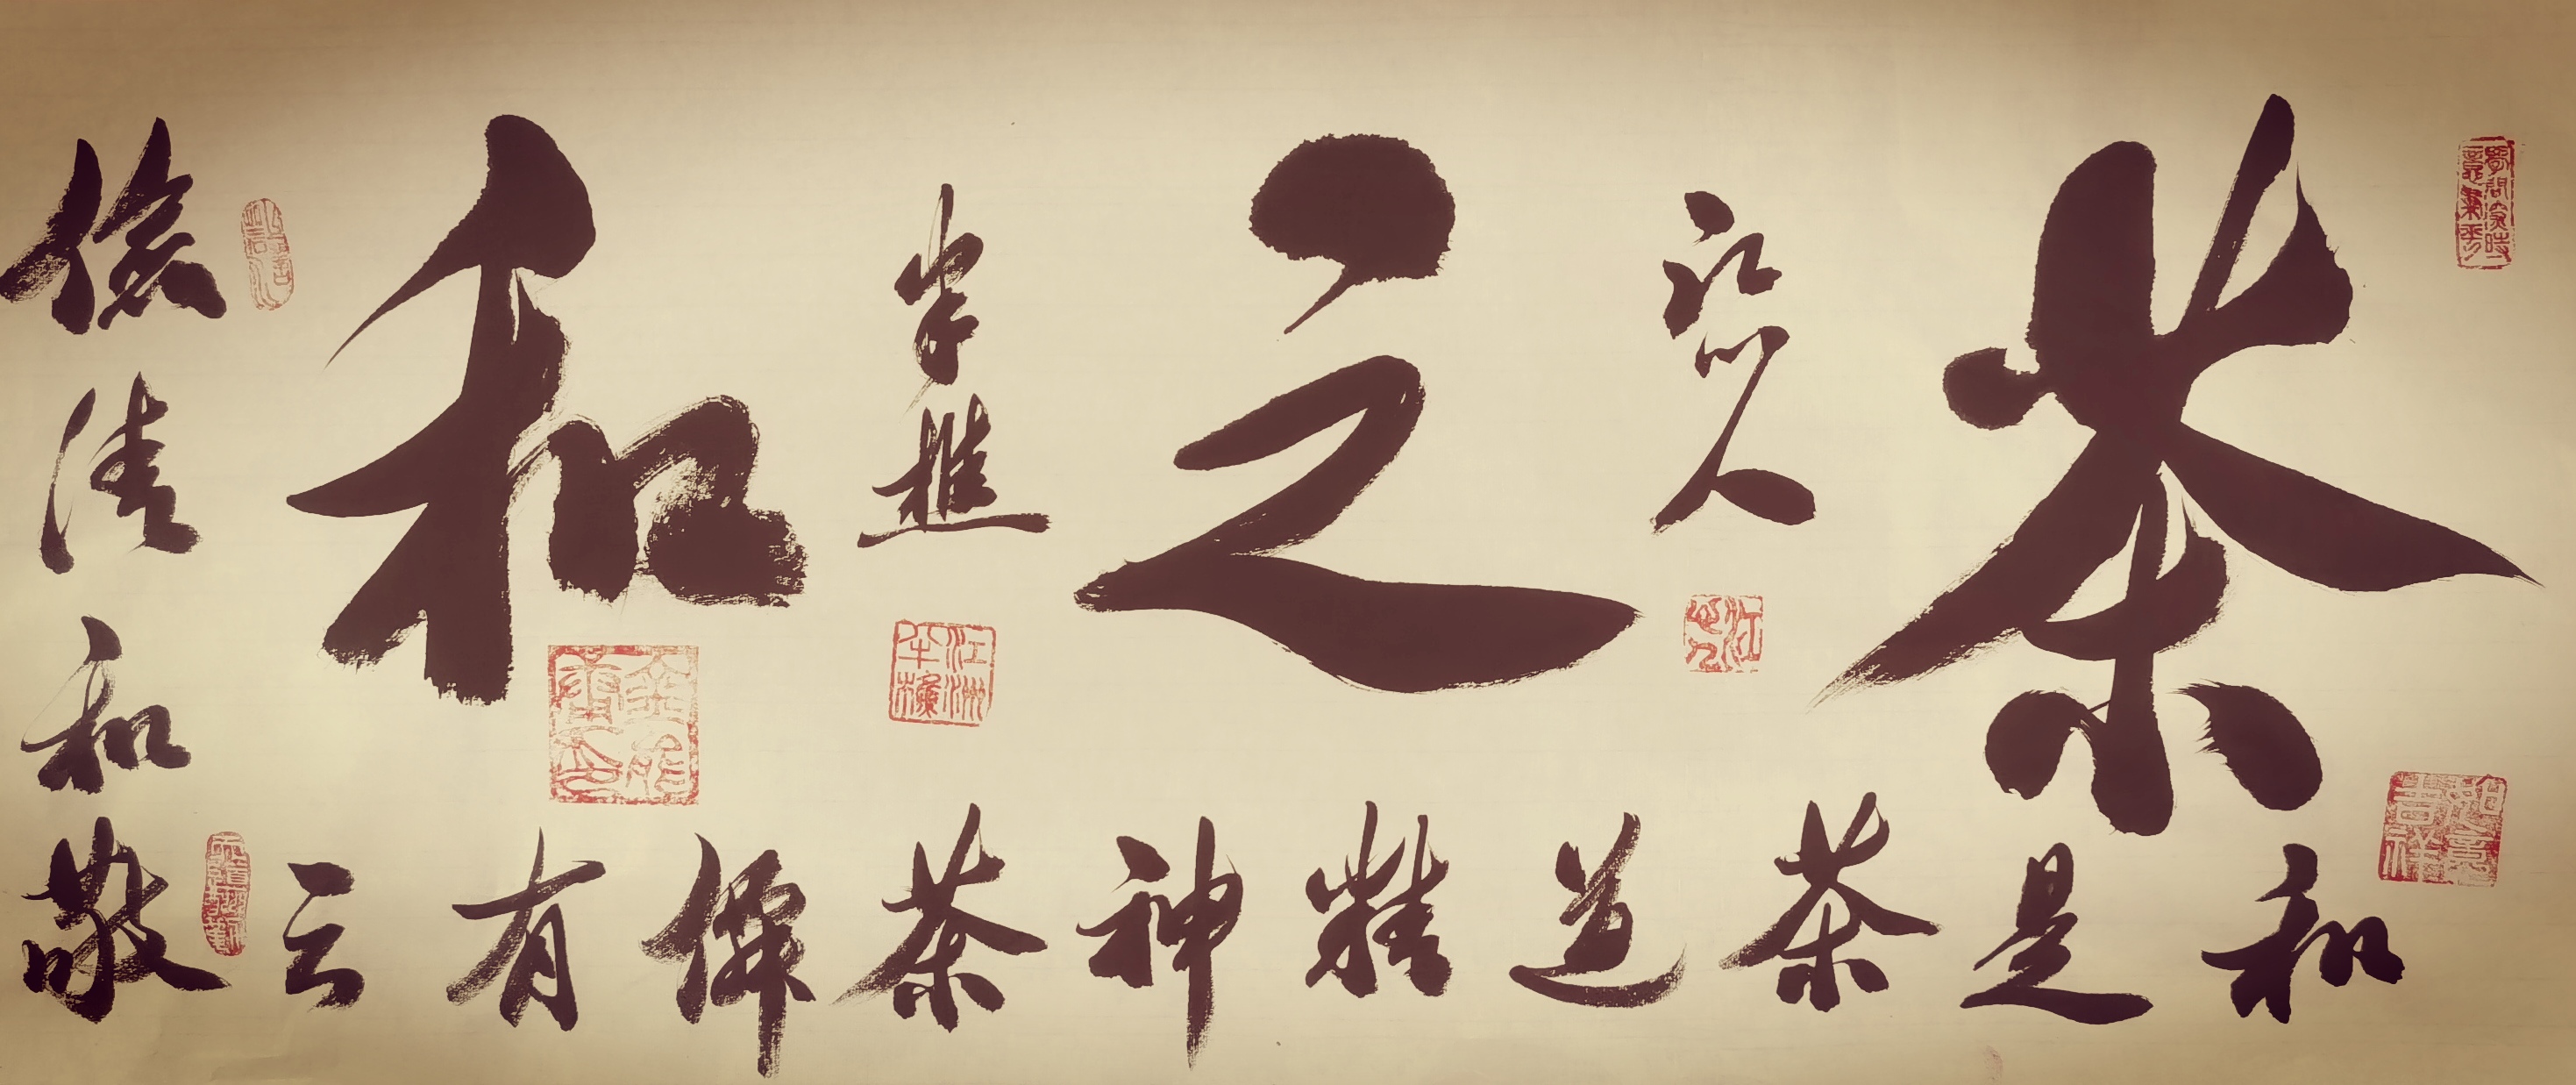 中国大众文化学会名人书画艺术发展委员会——金能庸